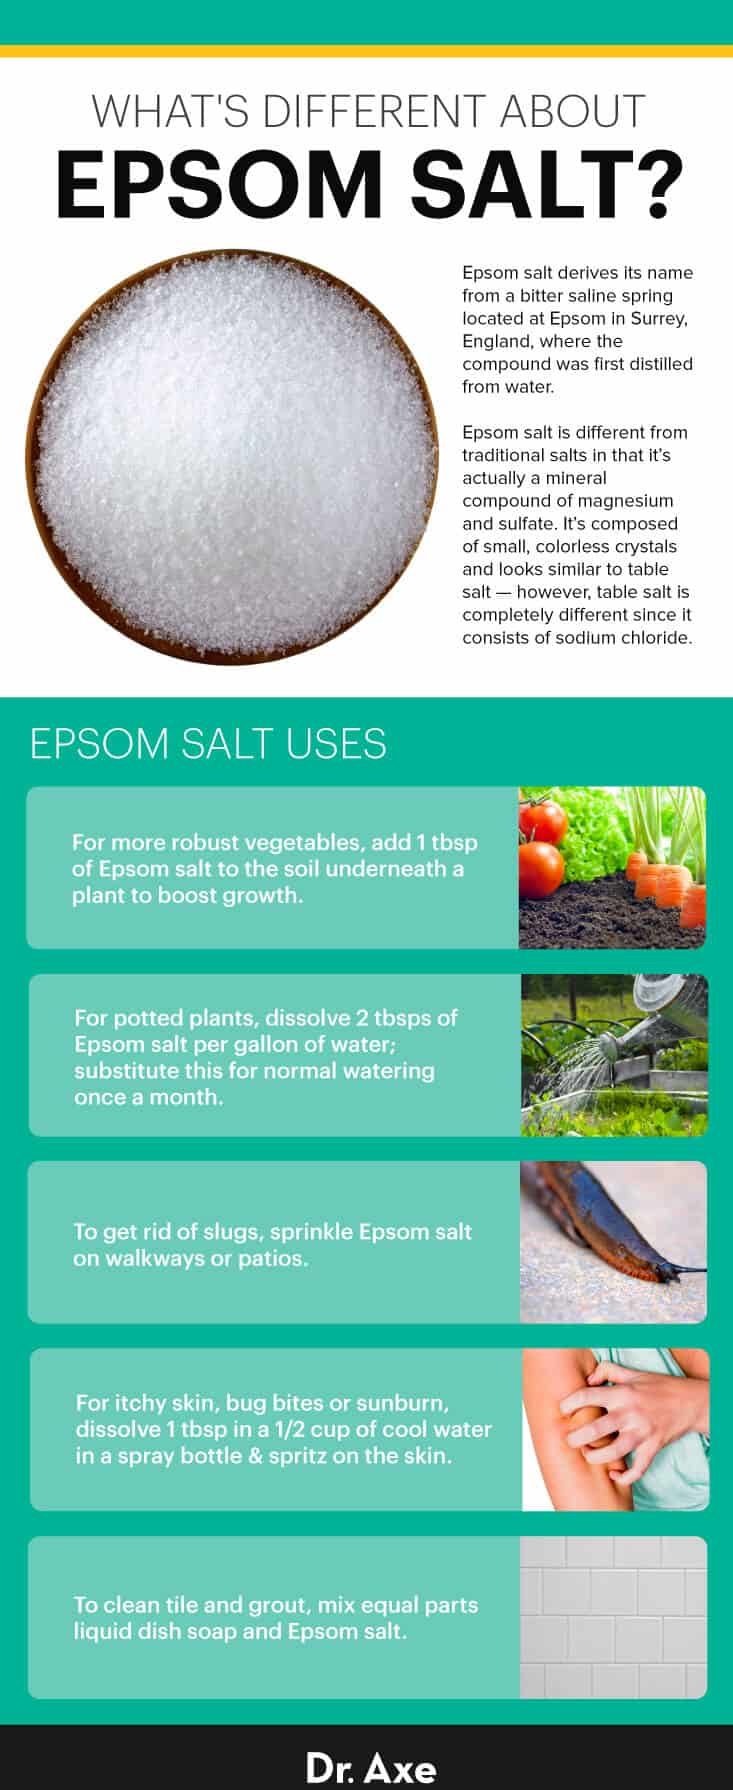 Epsom salt uses - Dr. Axe